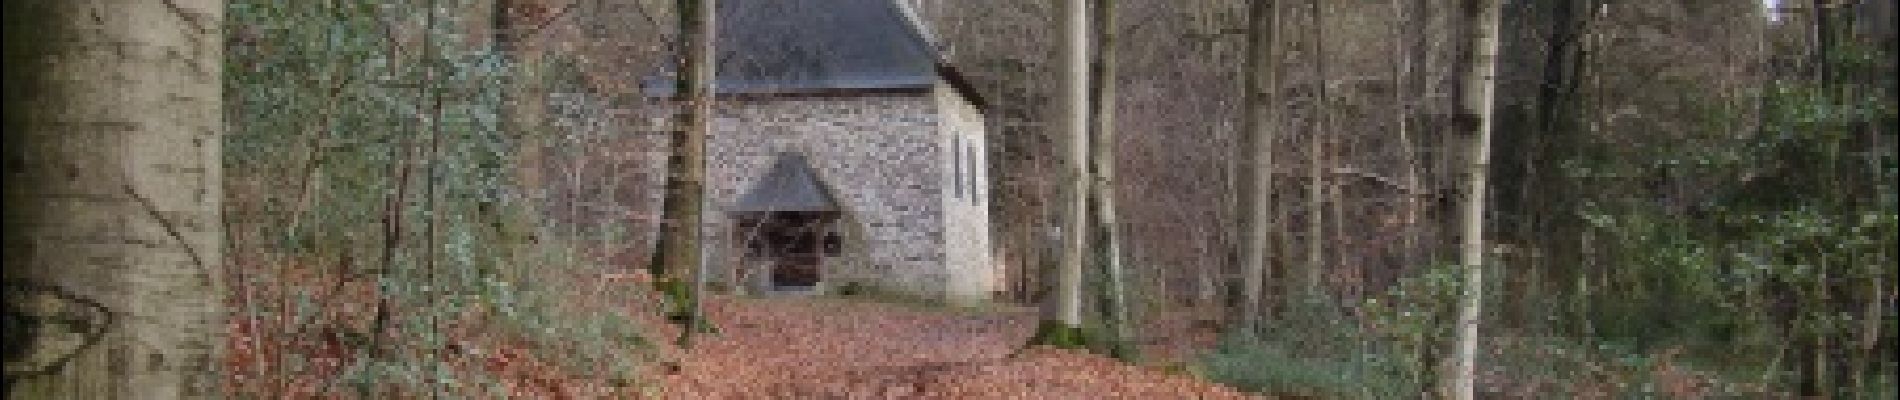 POI Stoumont - St Ann's Chapel - Photo